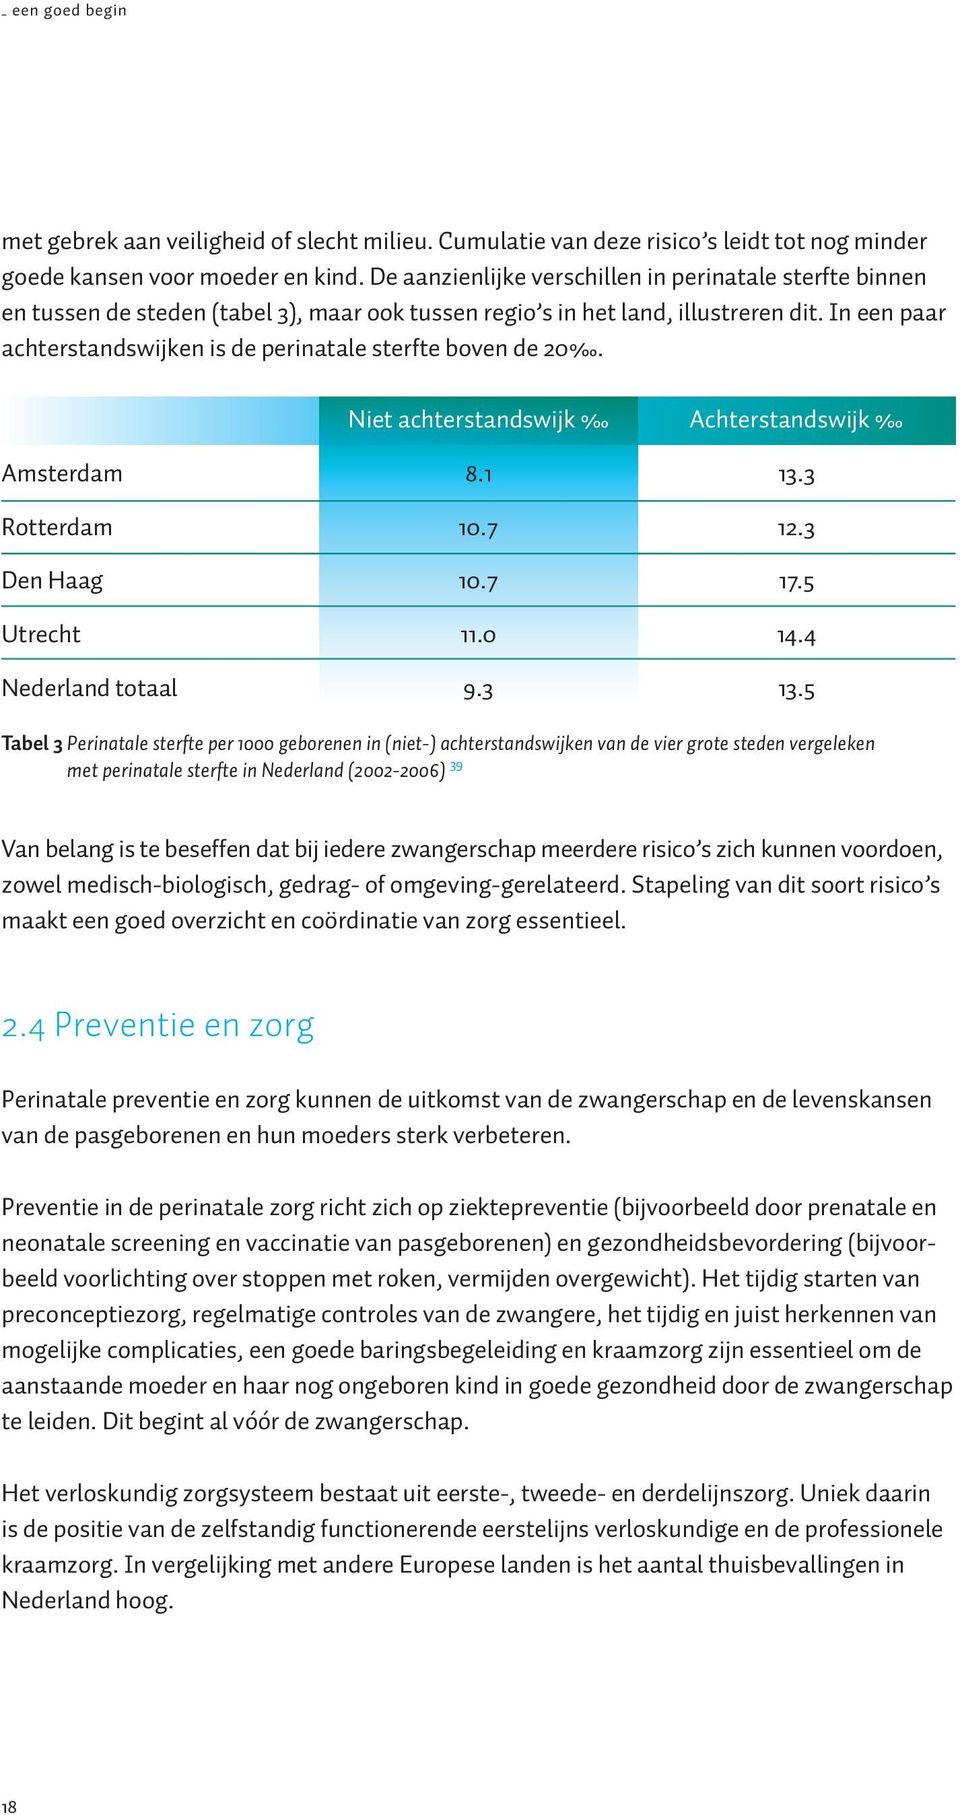 In een paar achterstandswijken is de perinatale sterfte boven de 20. Niet achterstandswijk Achterstandswijk Amsterdam 8.1 13.3 Rotterdam 10.7 12.3 Den Haag 10.7 17.5 Utrecht 11.0 14.